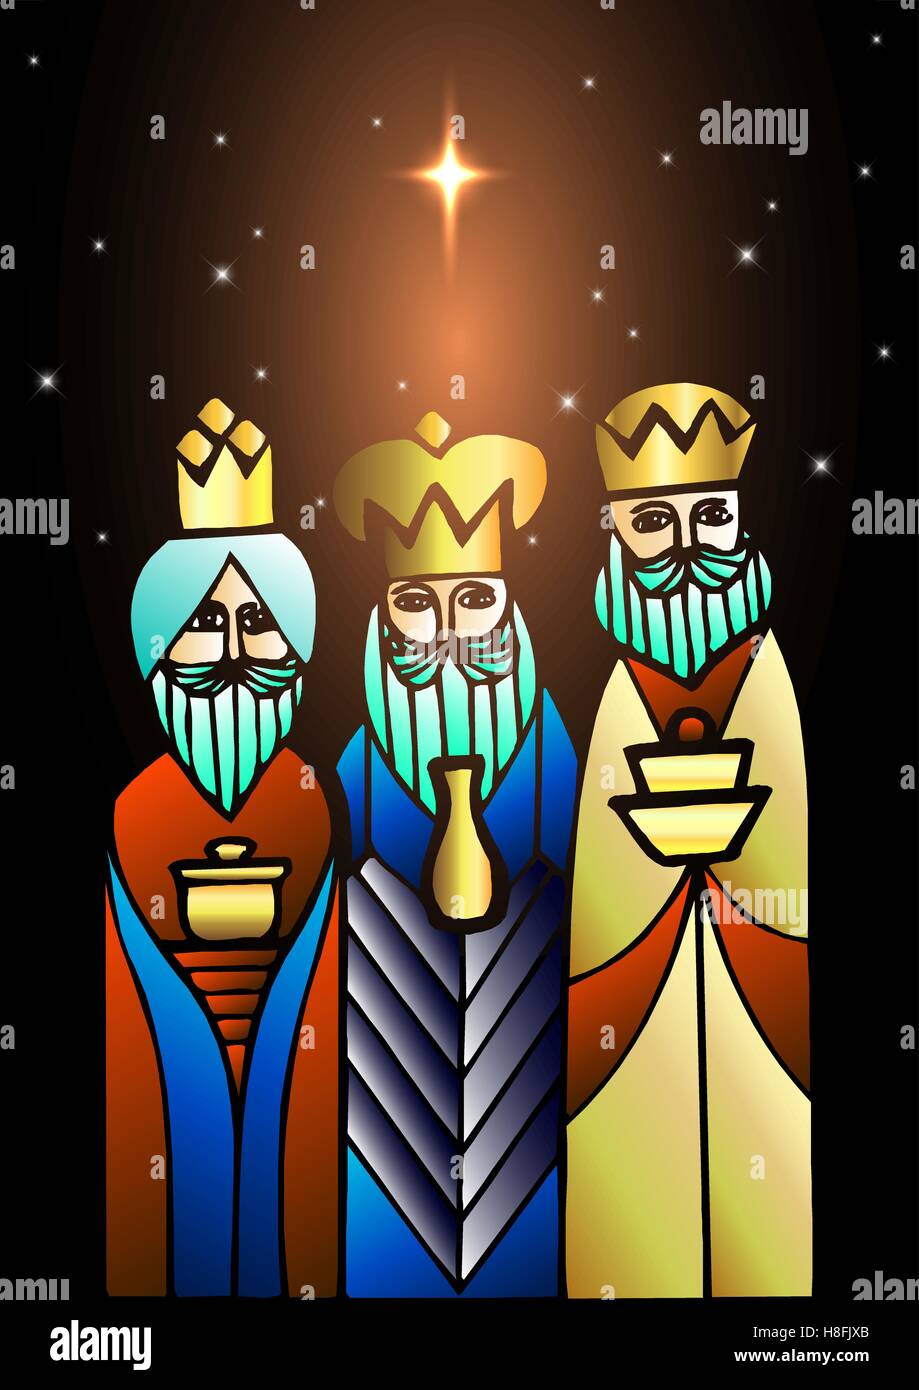 Biblica di Natale illustrazione vettoriale: tre saggi stanno visitando il nuovo re di Gerusalemme Gesù Cristo. Illustrazione Vettoriale